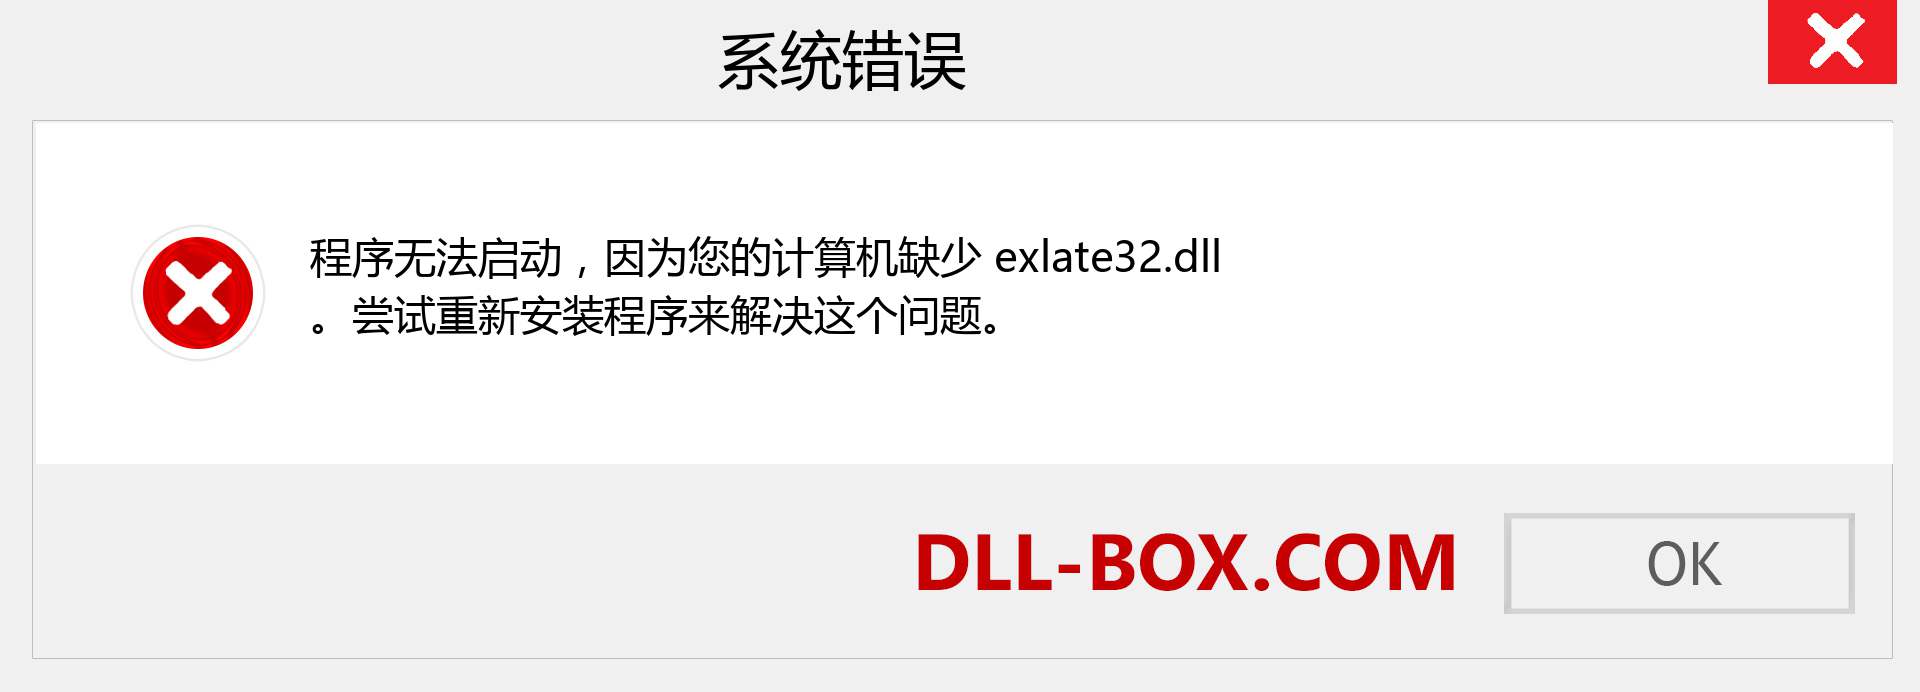 exlate32.dll 文件丢失？。 适用于 Windows 7、8、10 的下载 - 修复 Windows、照片、图像上的 exlate32 dll 丢失错误